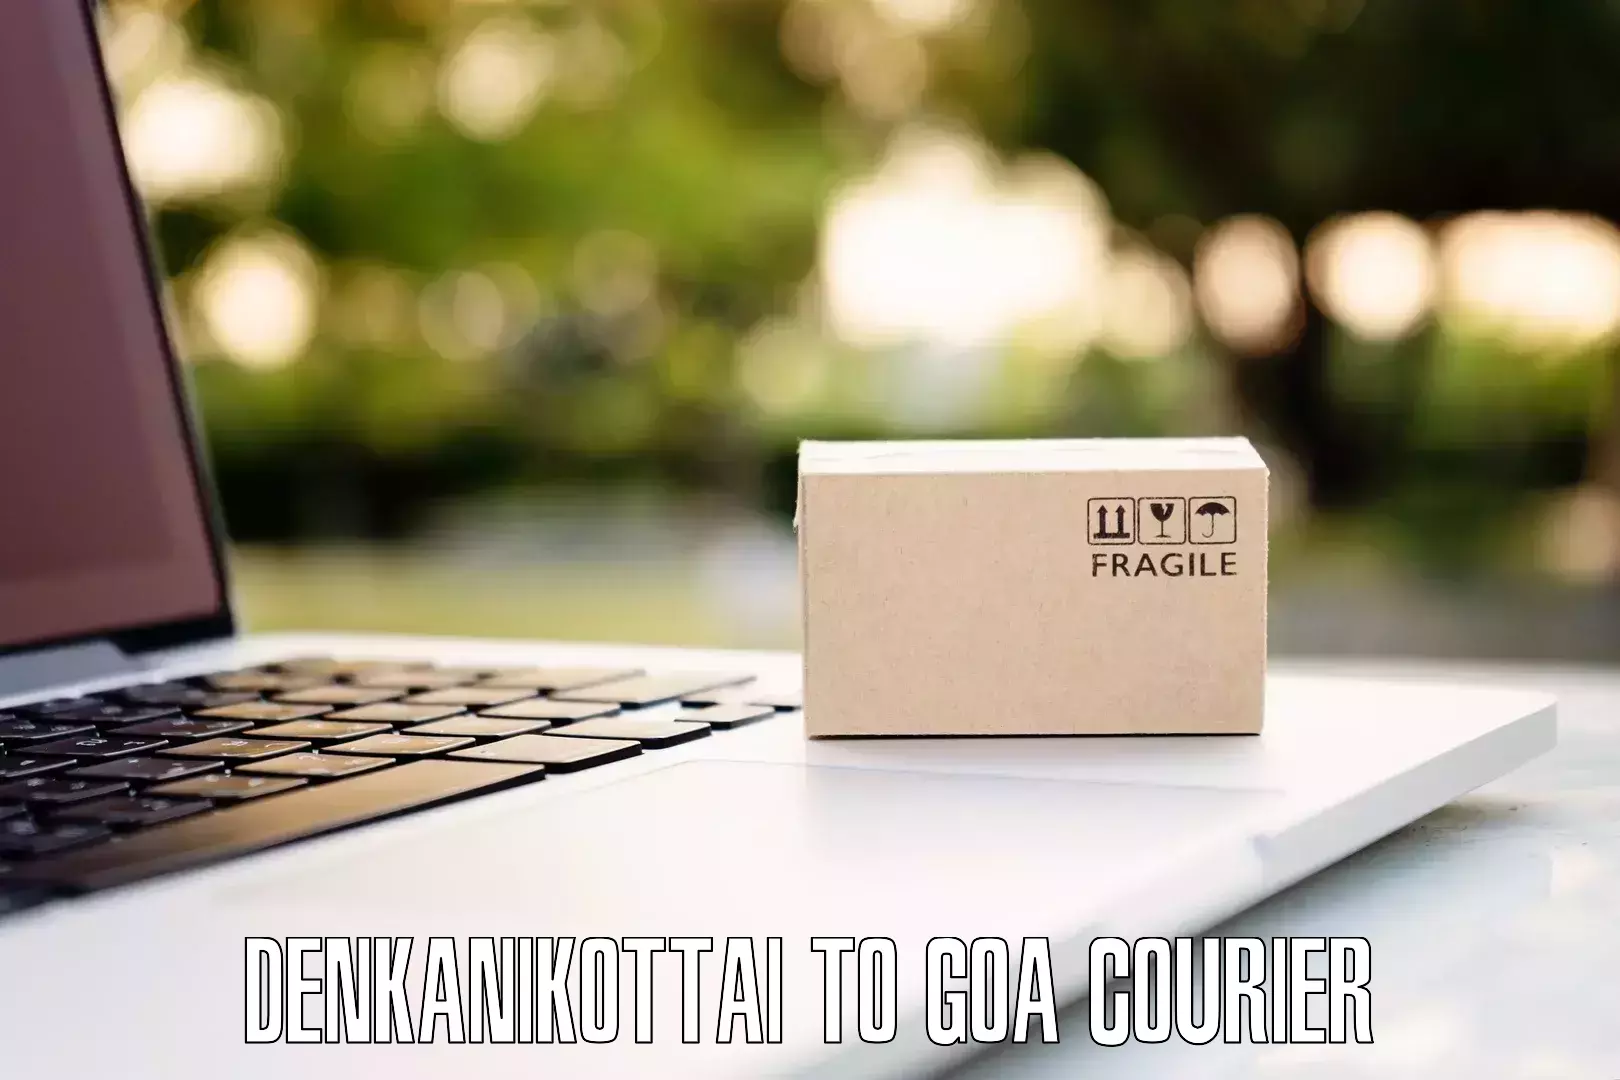 Citywide baggage courier Denkanikottai to IIT Goa